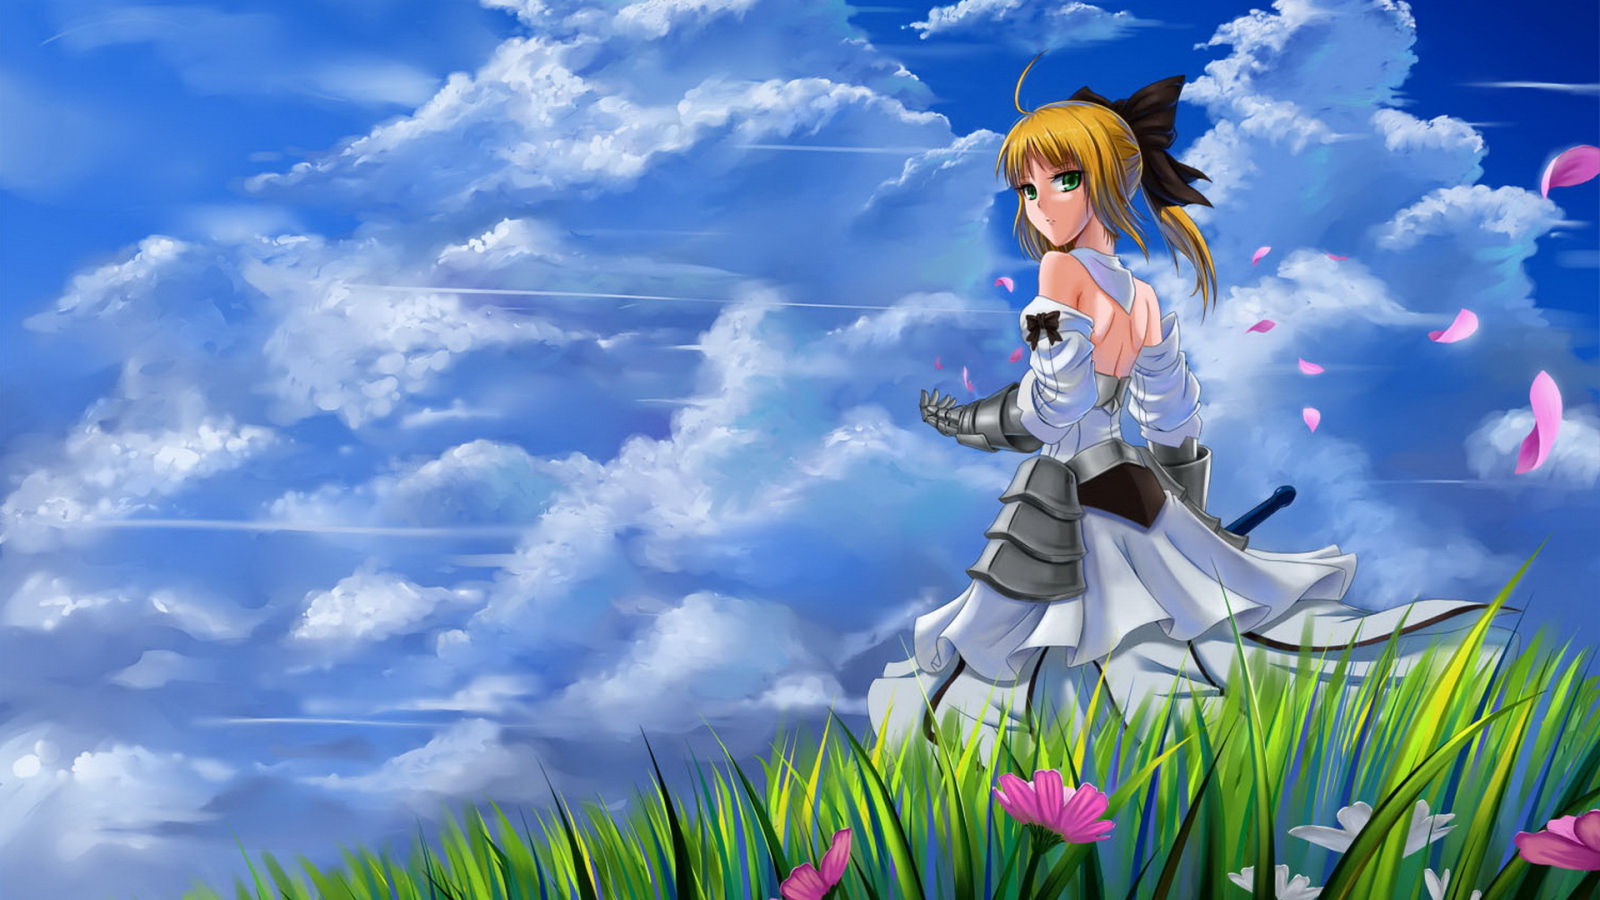 fondo de pantalla de anime 1600x900,dibujos animados,dibujos animados,cielo,anime,cg artwork